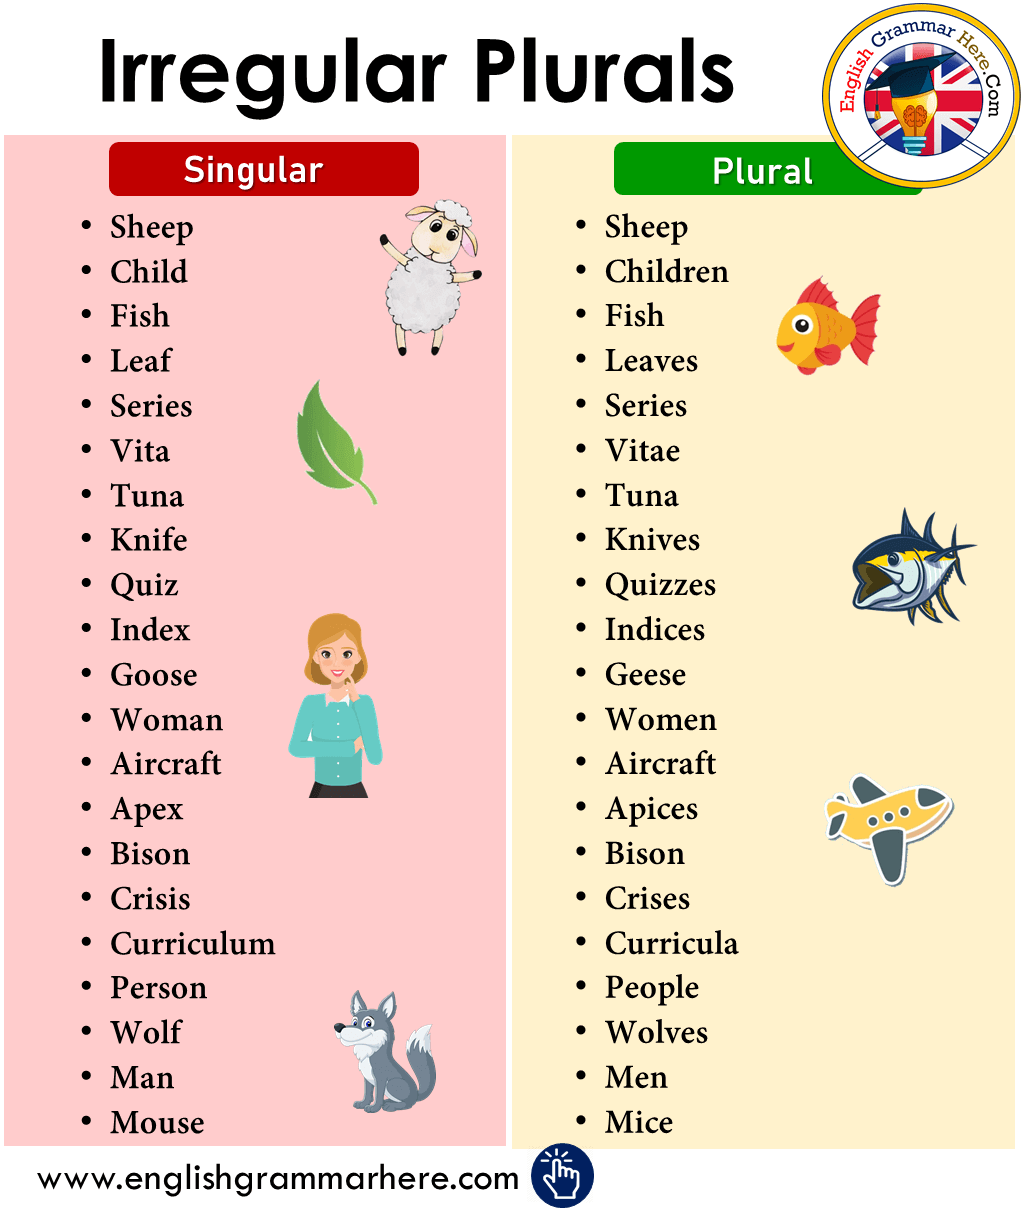 Detailed Irregular Plurals List in English